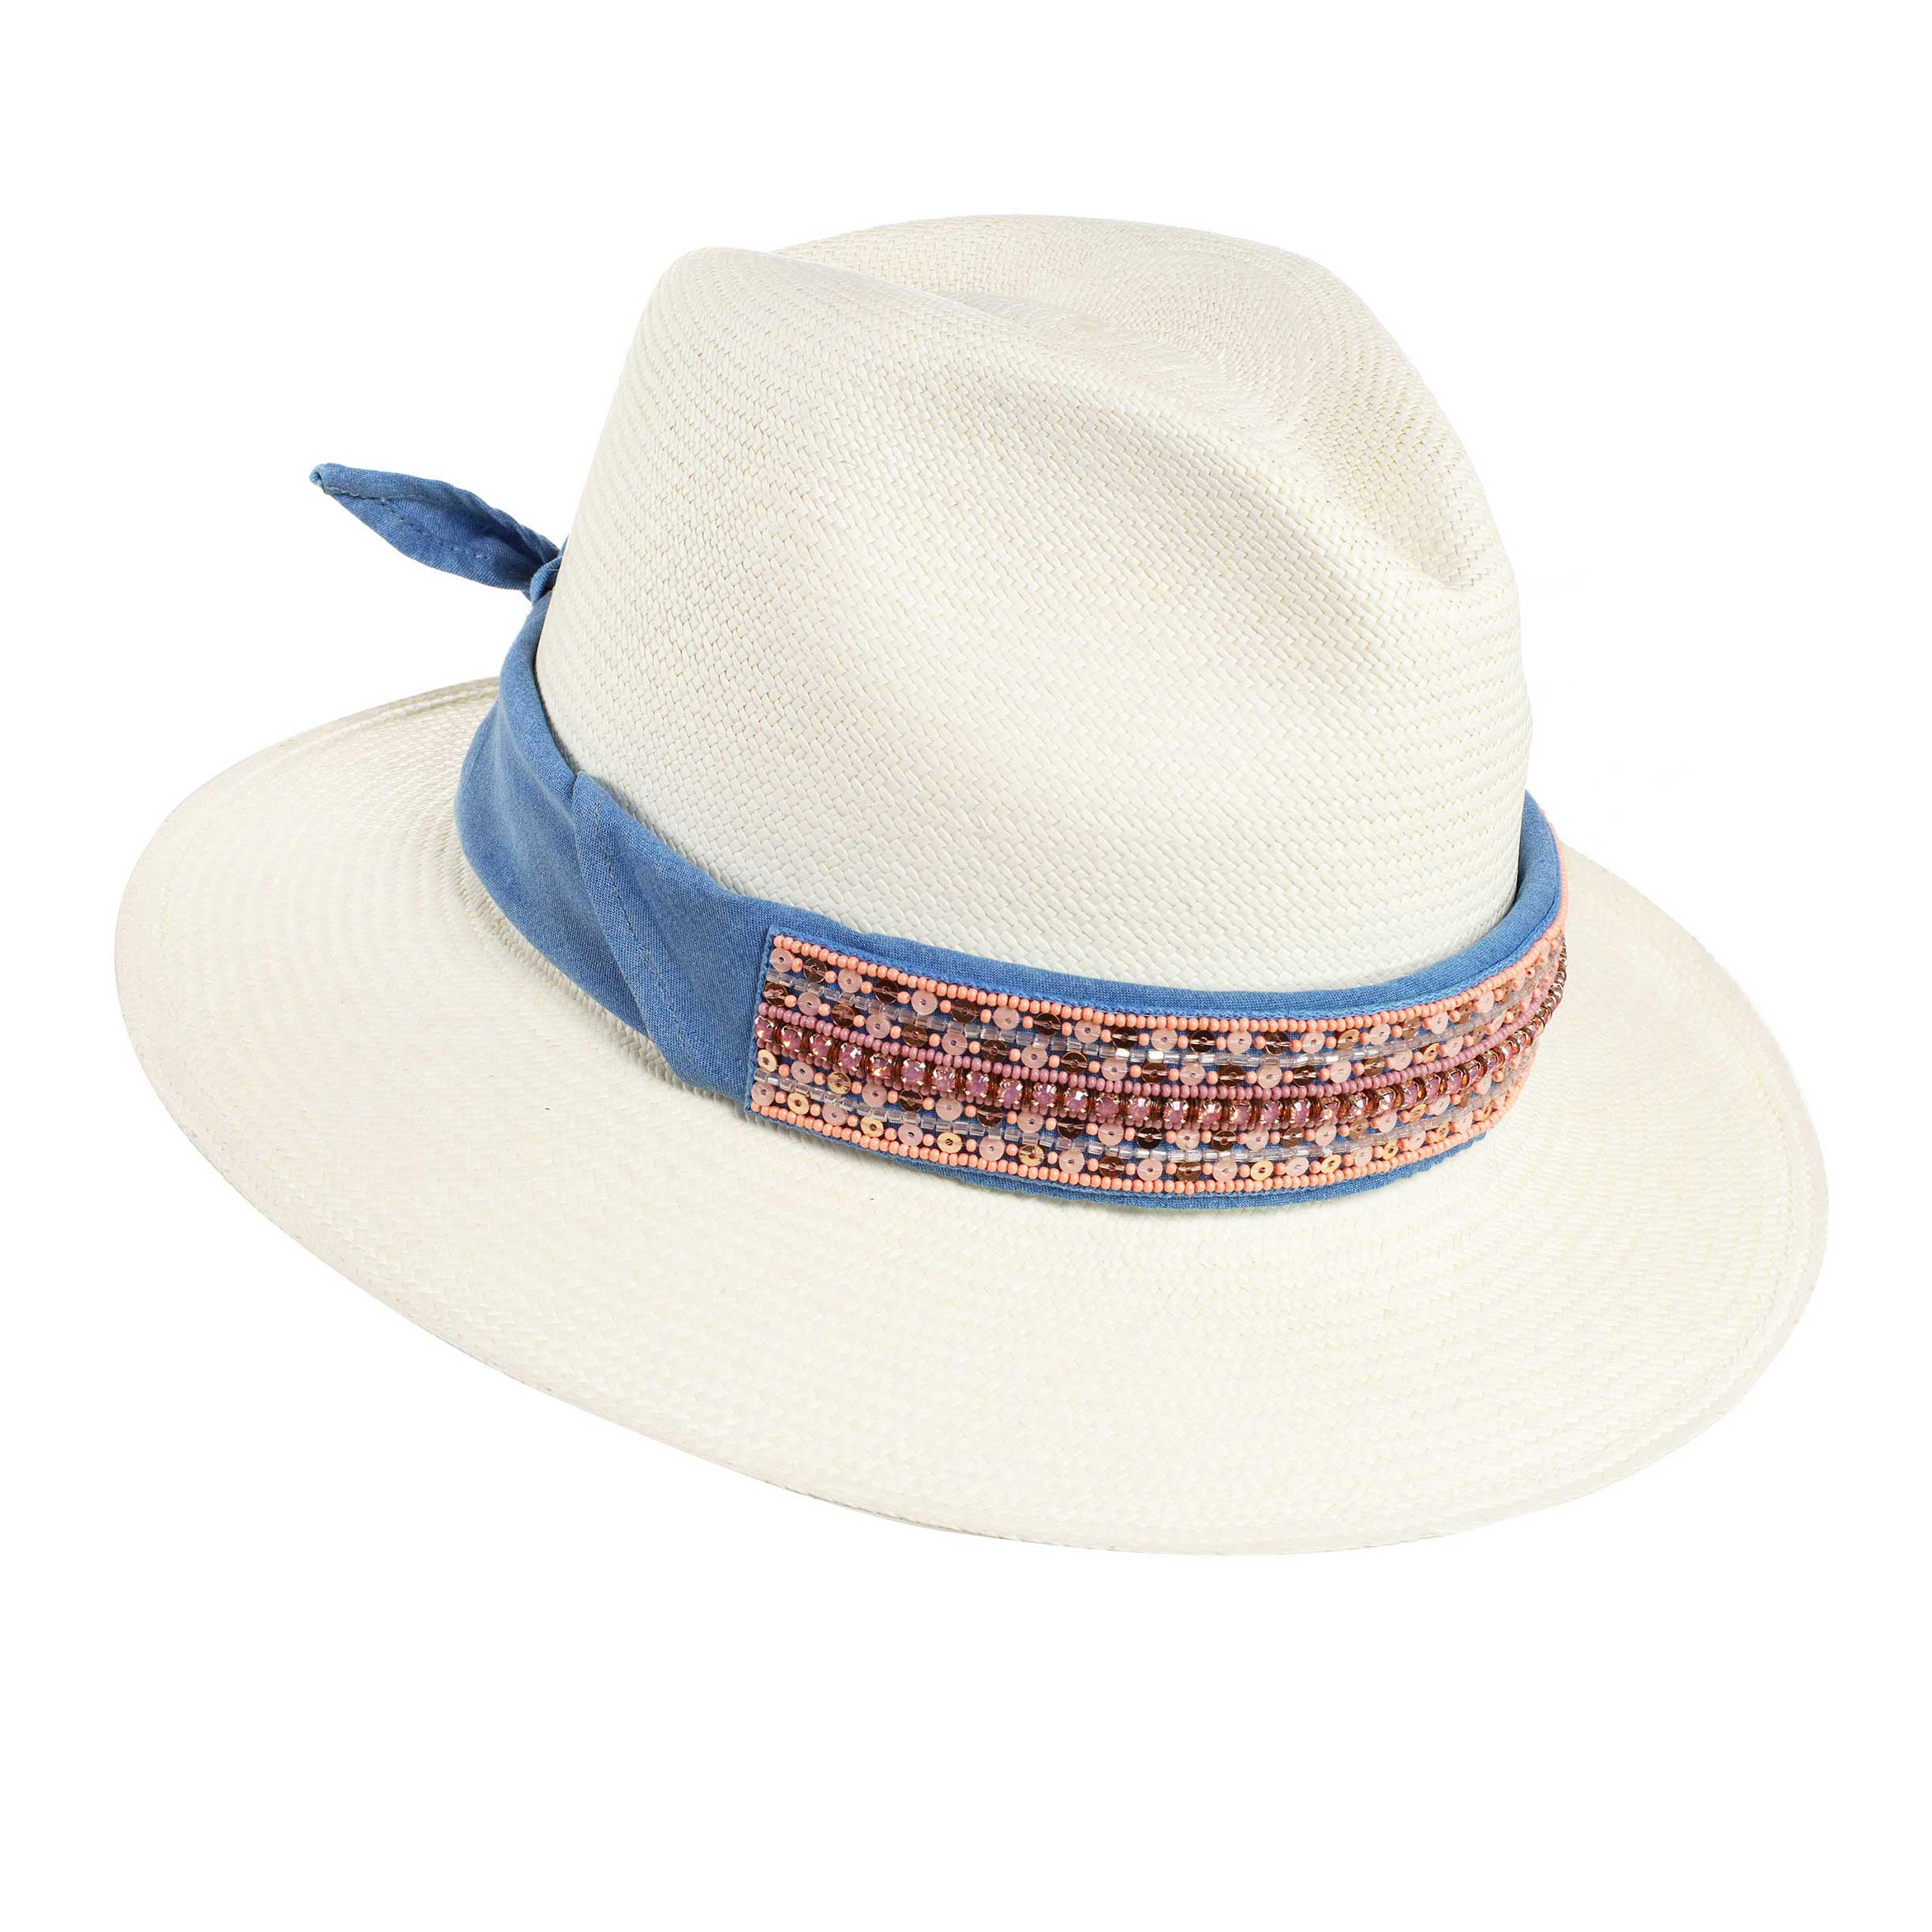 St. Tropez Pink Sequins Panama Hat